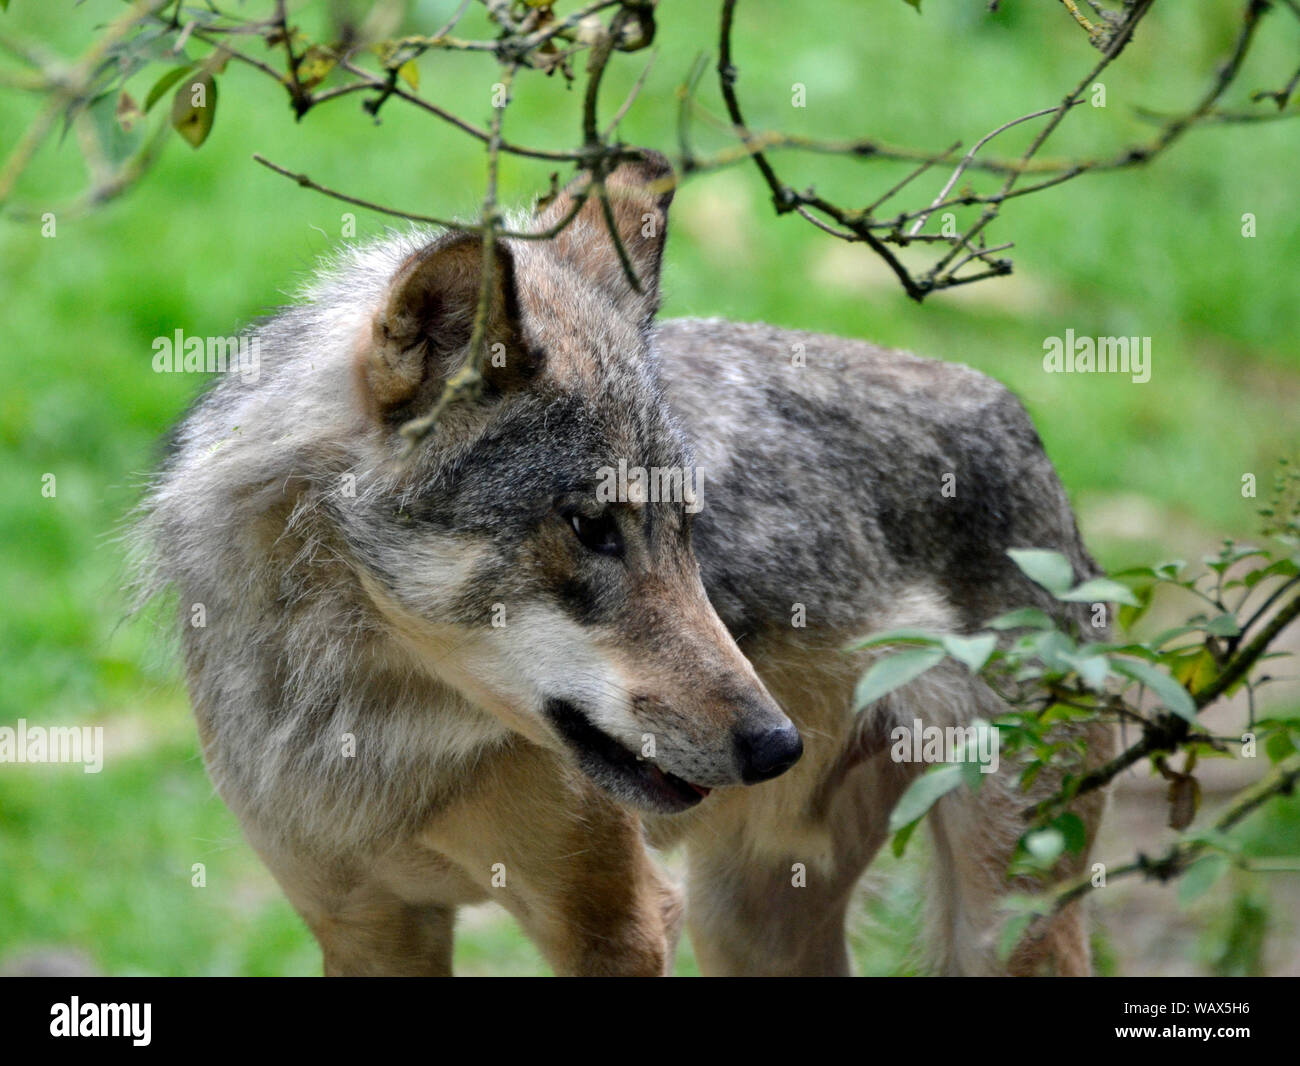 Loup eurasien Cotswold Wildlife Park, Burford, Oxfordshire, UK. Partie de la région des Cotswolds. Banque D'Images